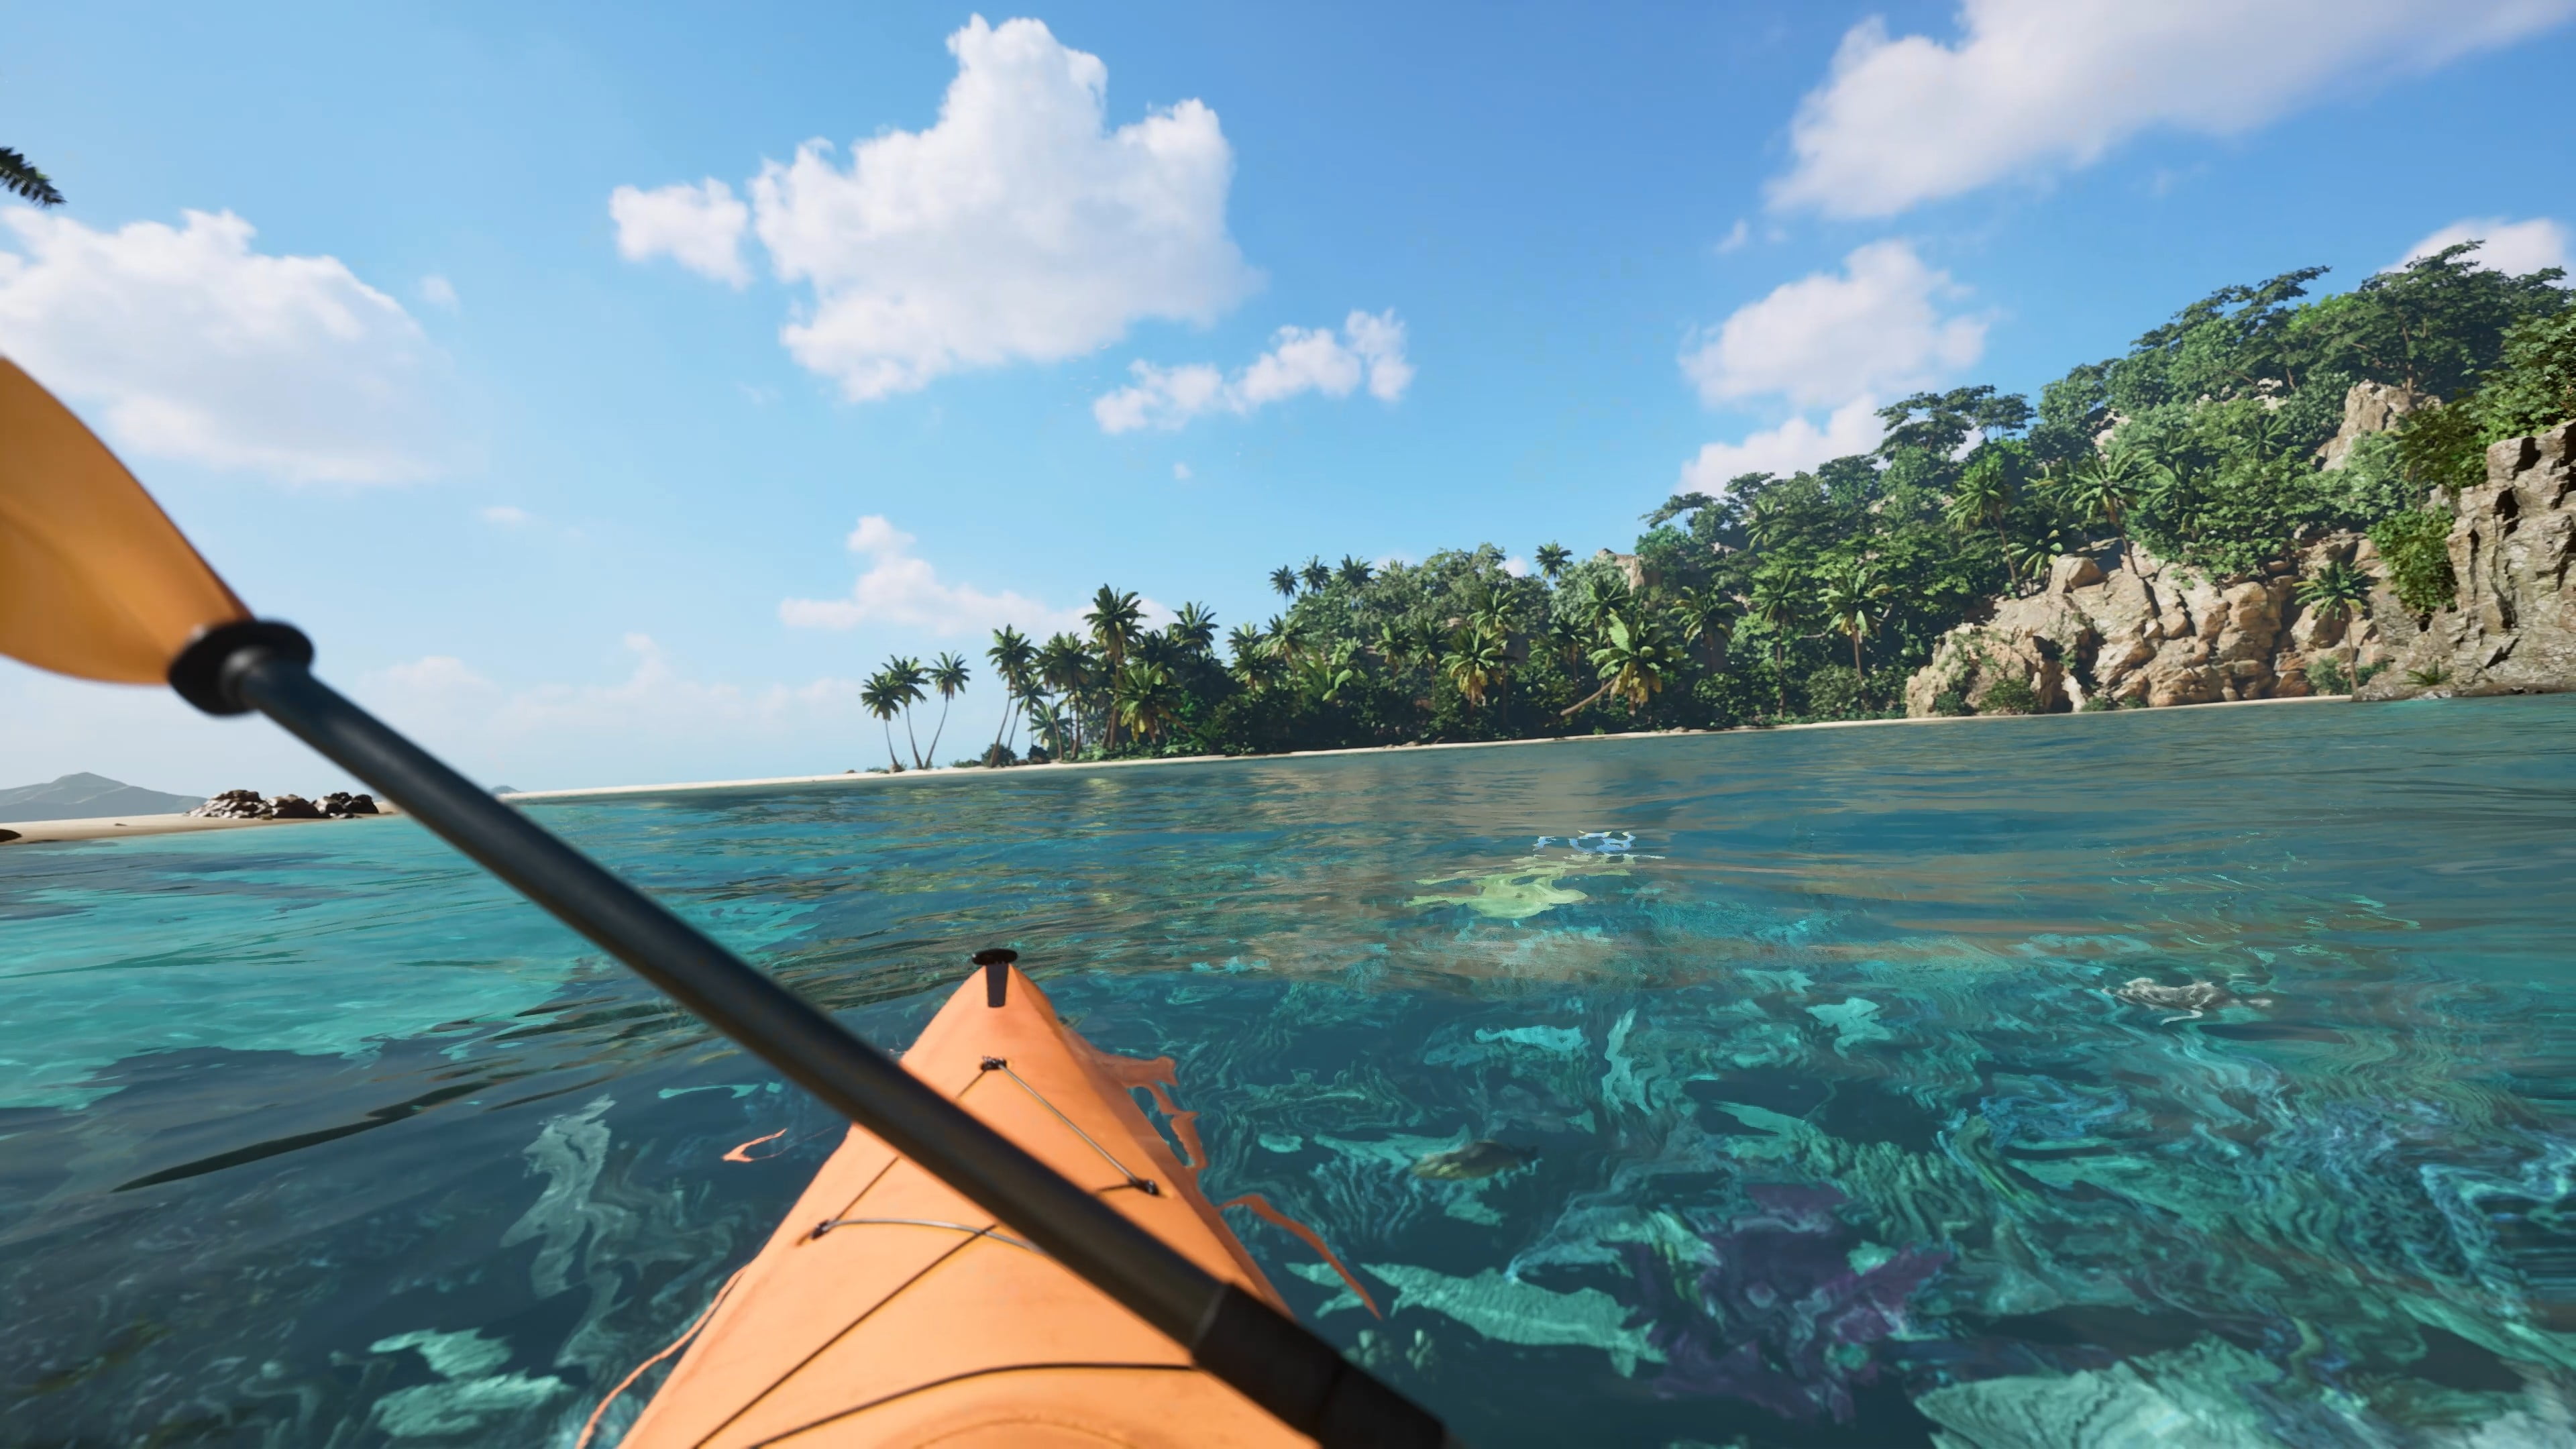 Playstation VR 2 macht PC-VR-Grafikwunder „schöner als je zuvor“